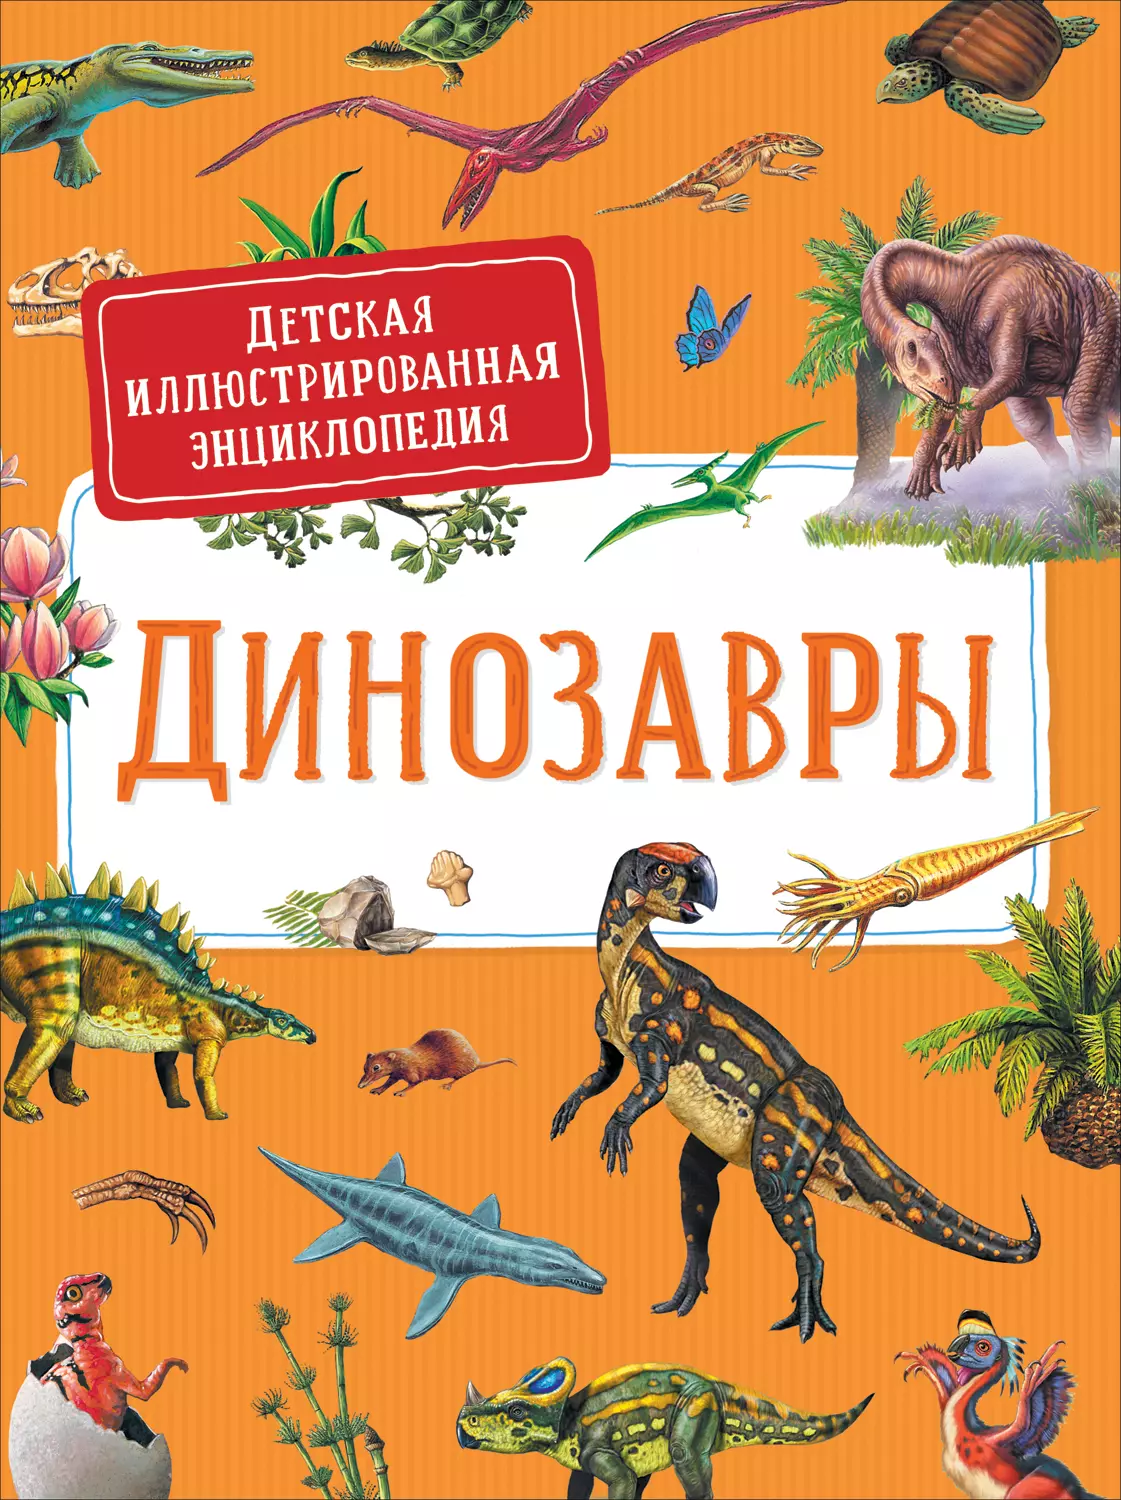 Детская иллюстрированная энциклопедия Динозавры. изд. Росмэн